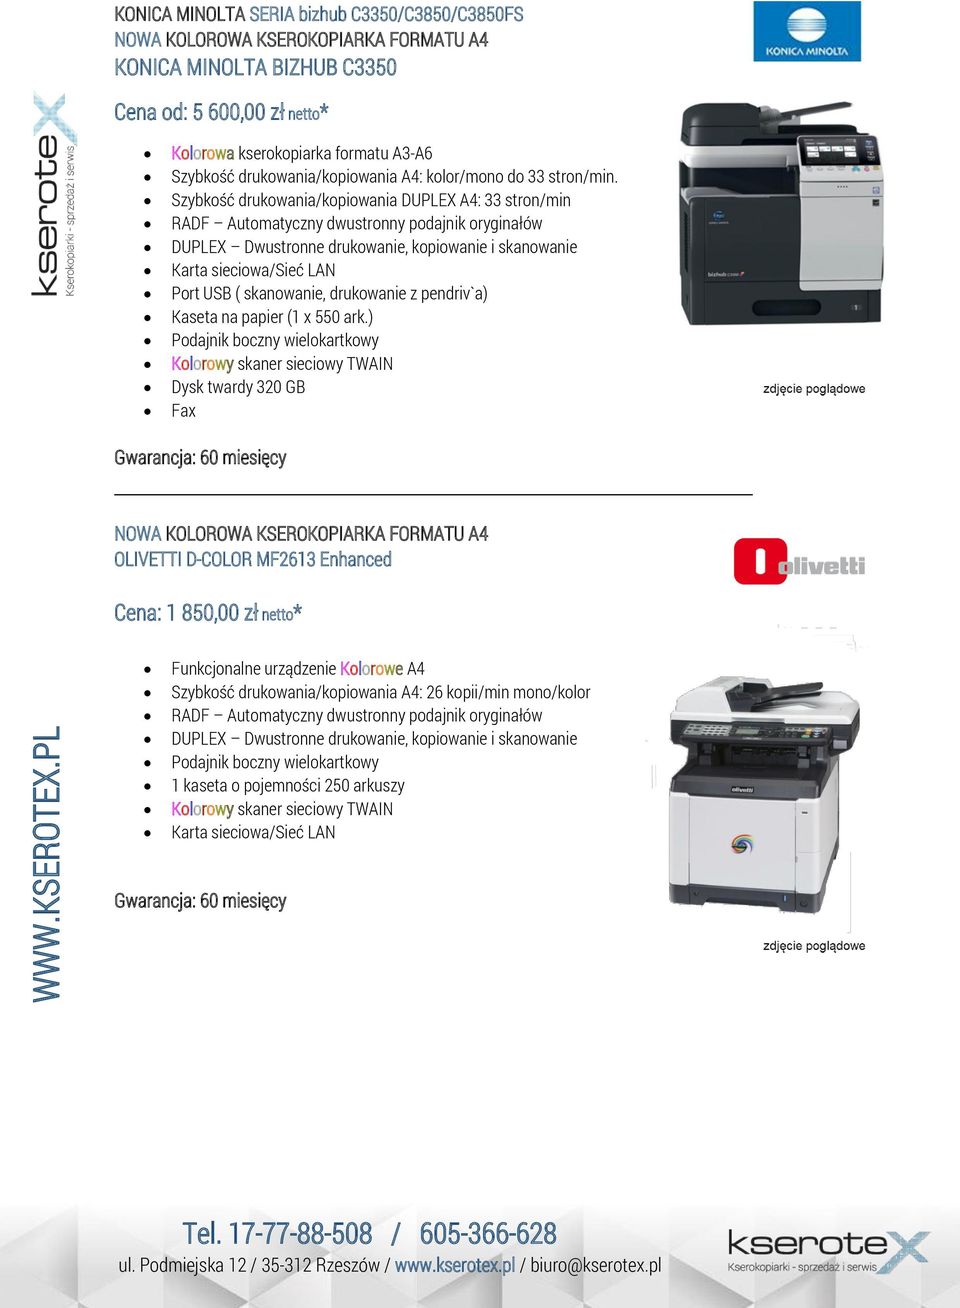 Szybkość drukowania/kopiowania DUPLEX A4: 33 stron/min RADF Automatyczny dwustronny podajnik oryginałów Port USB ( skanowanie, drukowanie z pendriv`a) Kaseta na papier (1 x 550 ark.